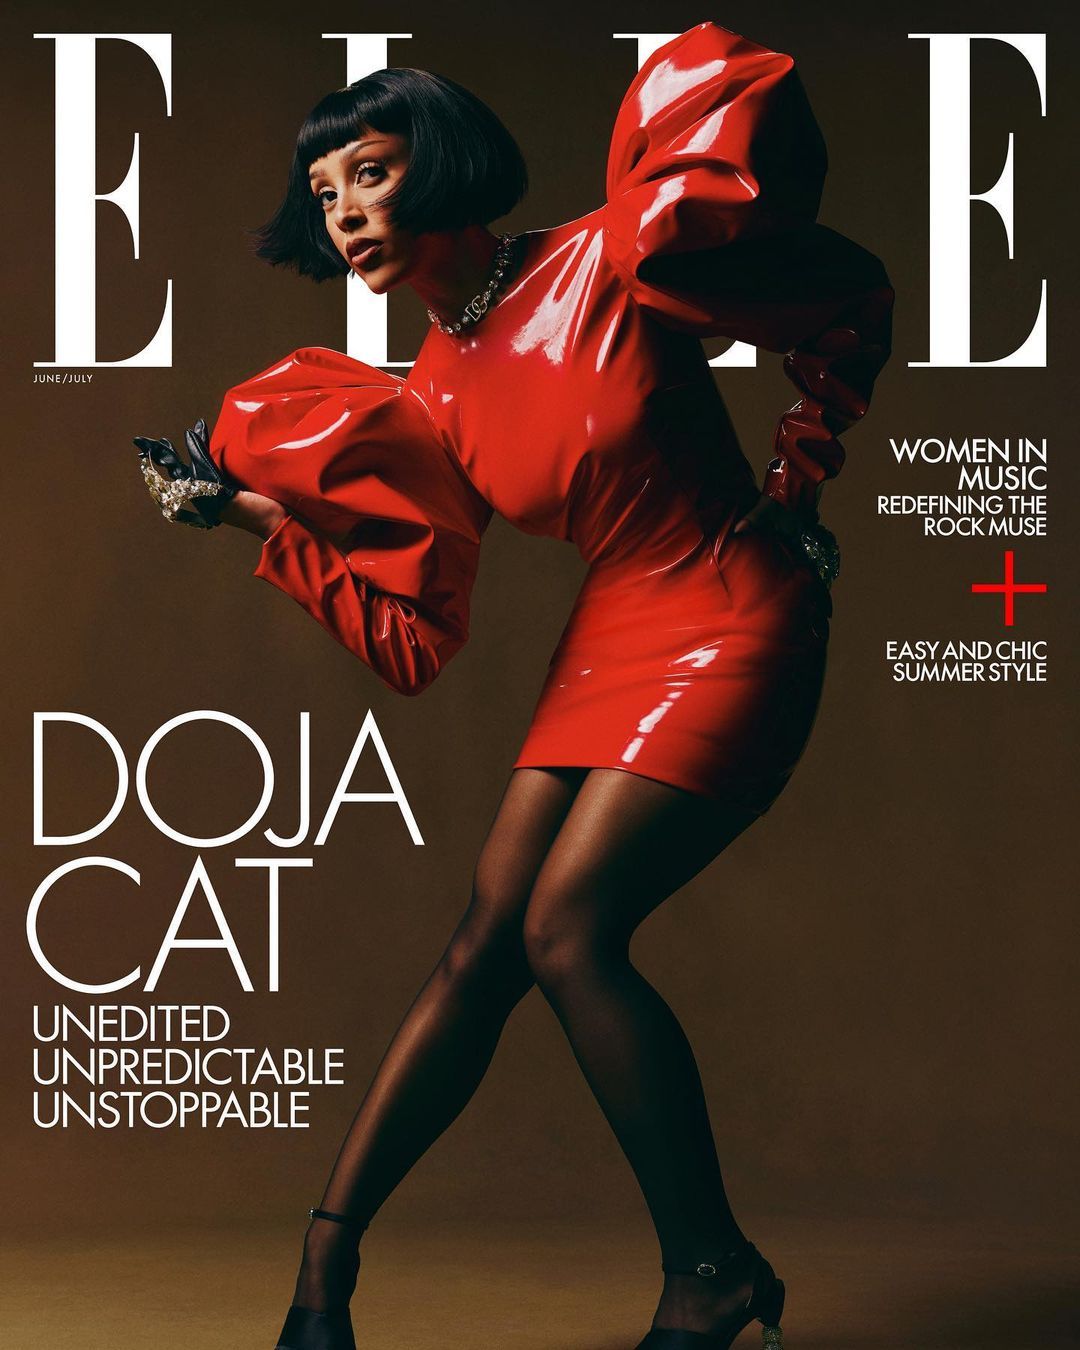 Potret Gaya High Fashion Doja Cat di Sebuah Majalah